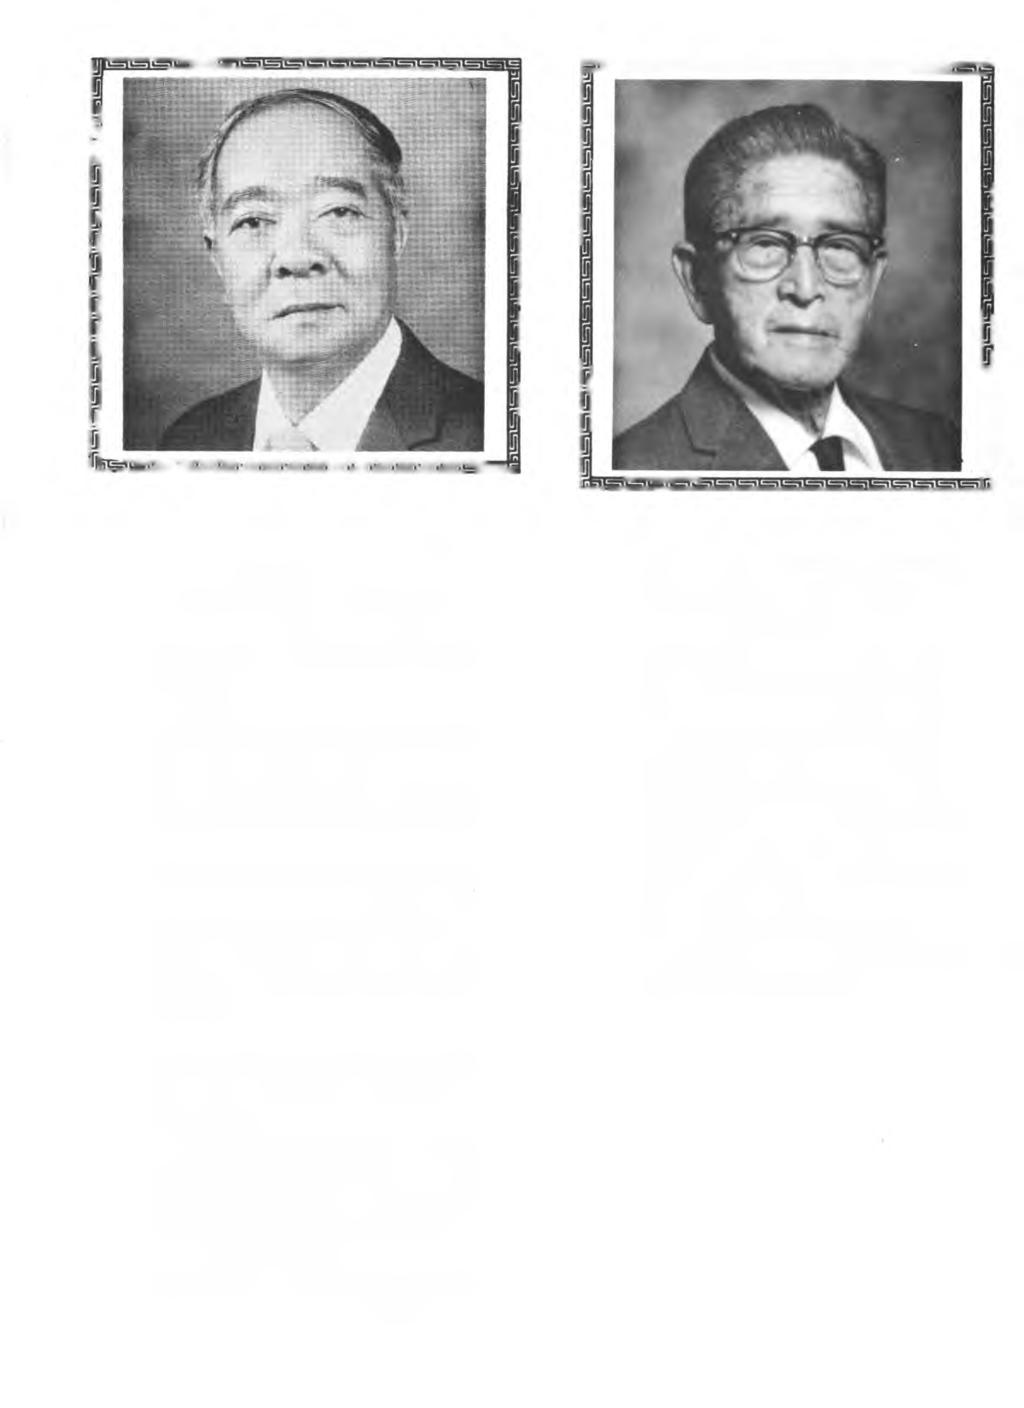 LESTER M. HAMAI Lester M. Hamai is president and manager o f Hamai A ppliance, Inc. M r.